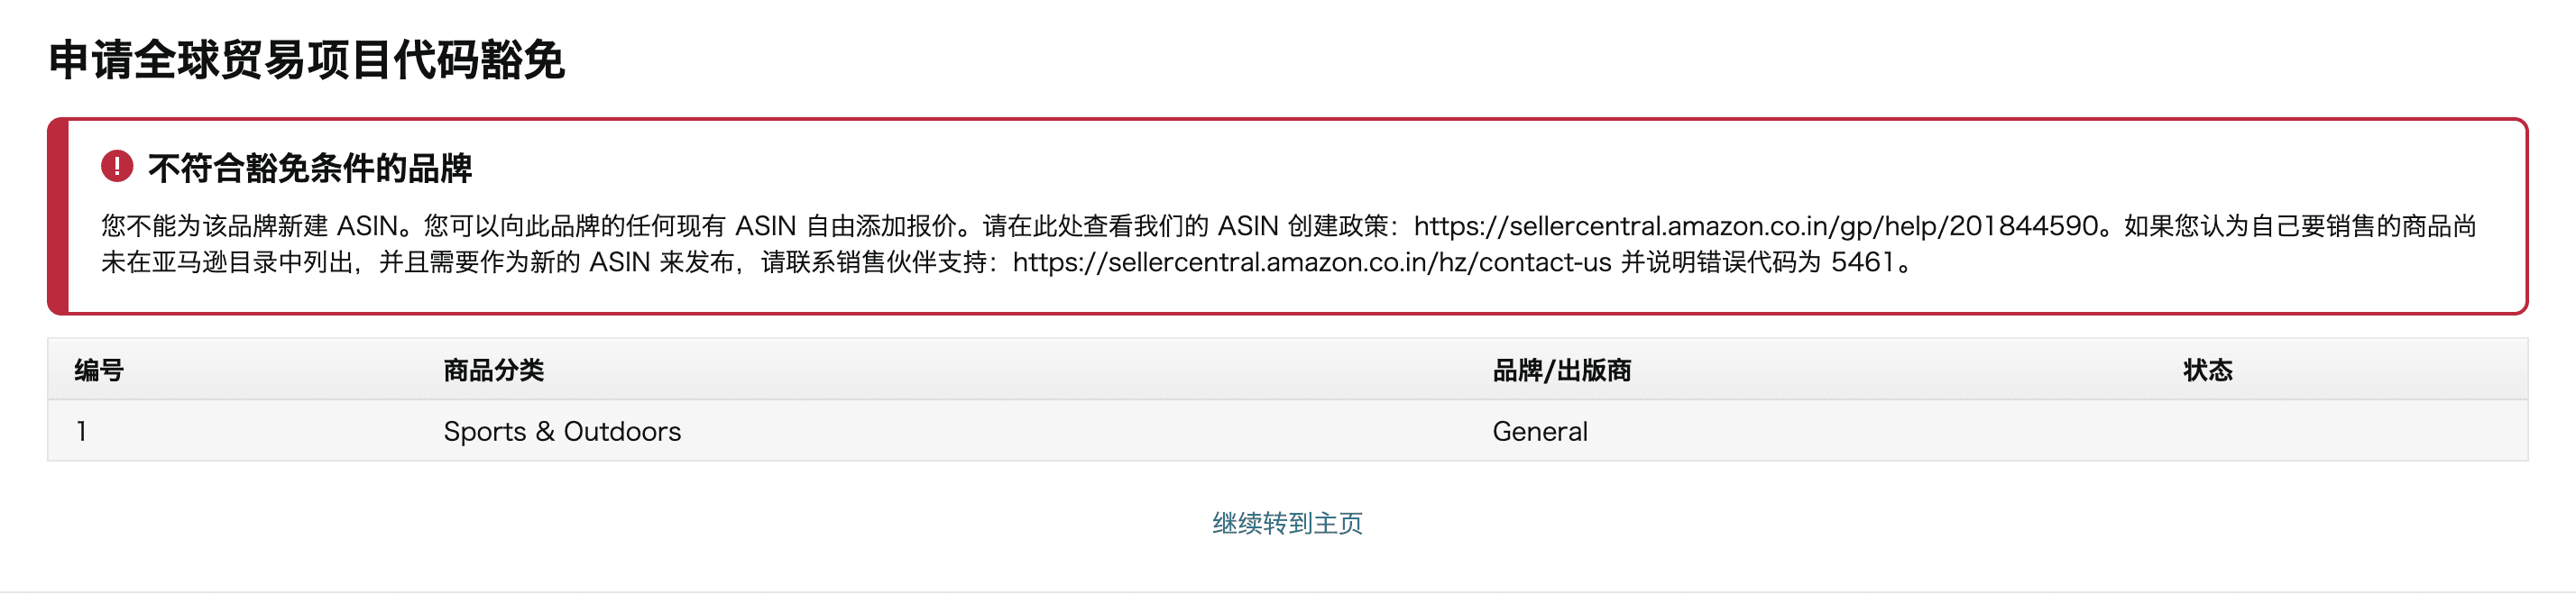 亚马逊Amazon跨境库存管理及免费贸易代码豁免申请